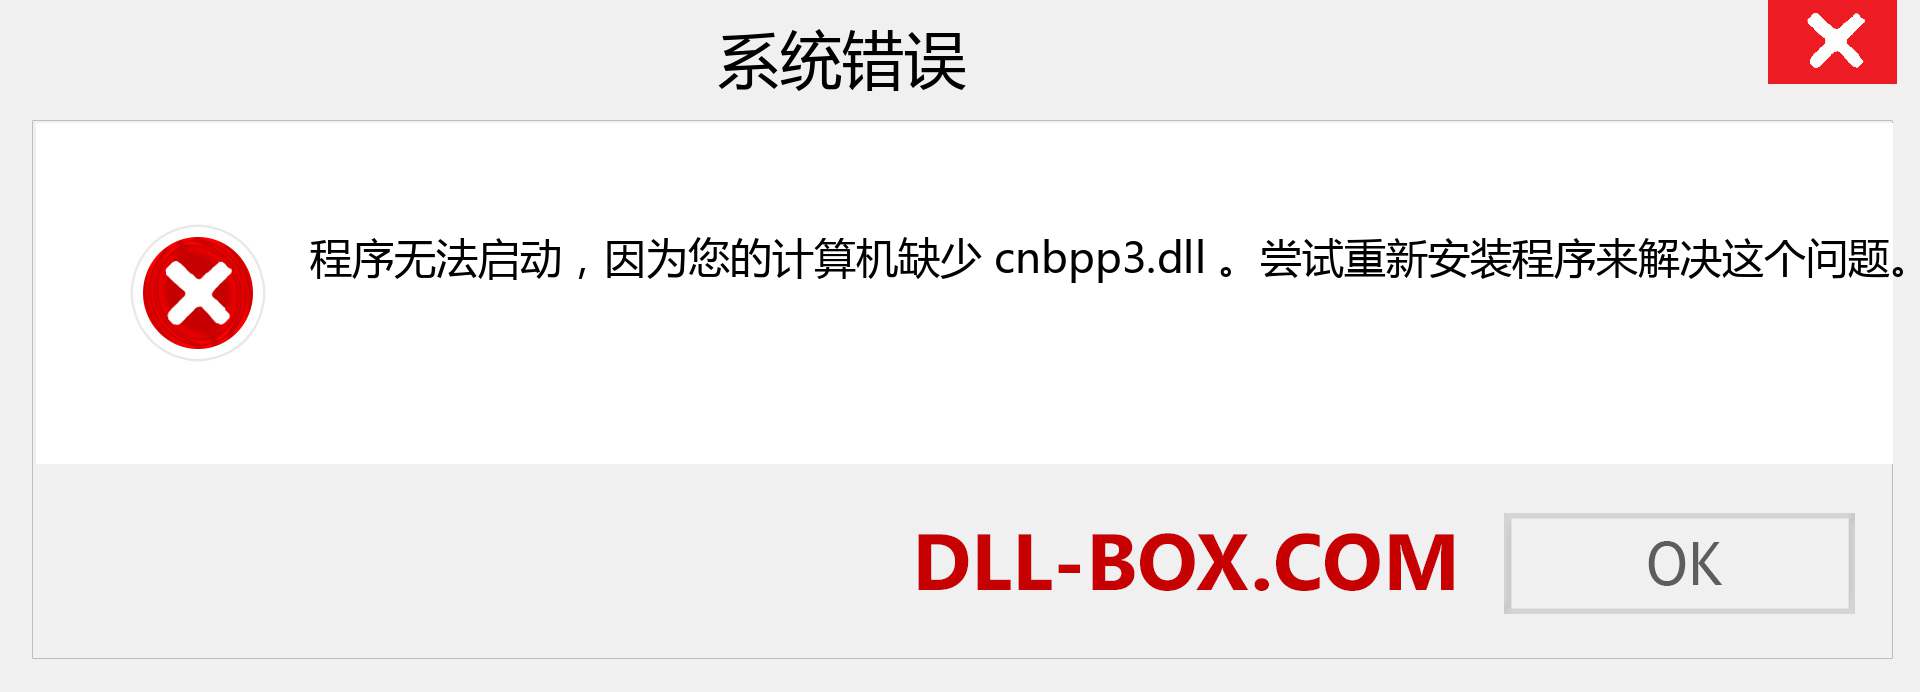 cnbpp3.dll 文件丢失？。 适用于 Windows 7、8、10 的下载 - 修复 Windows、照片、图像上的 cnbpp3 dll 丢失错误